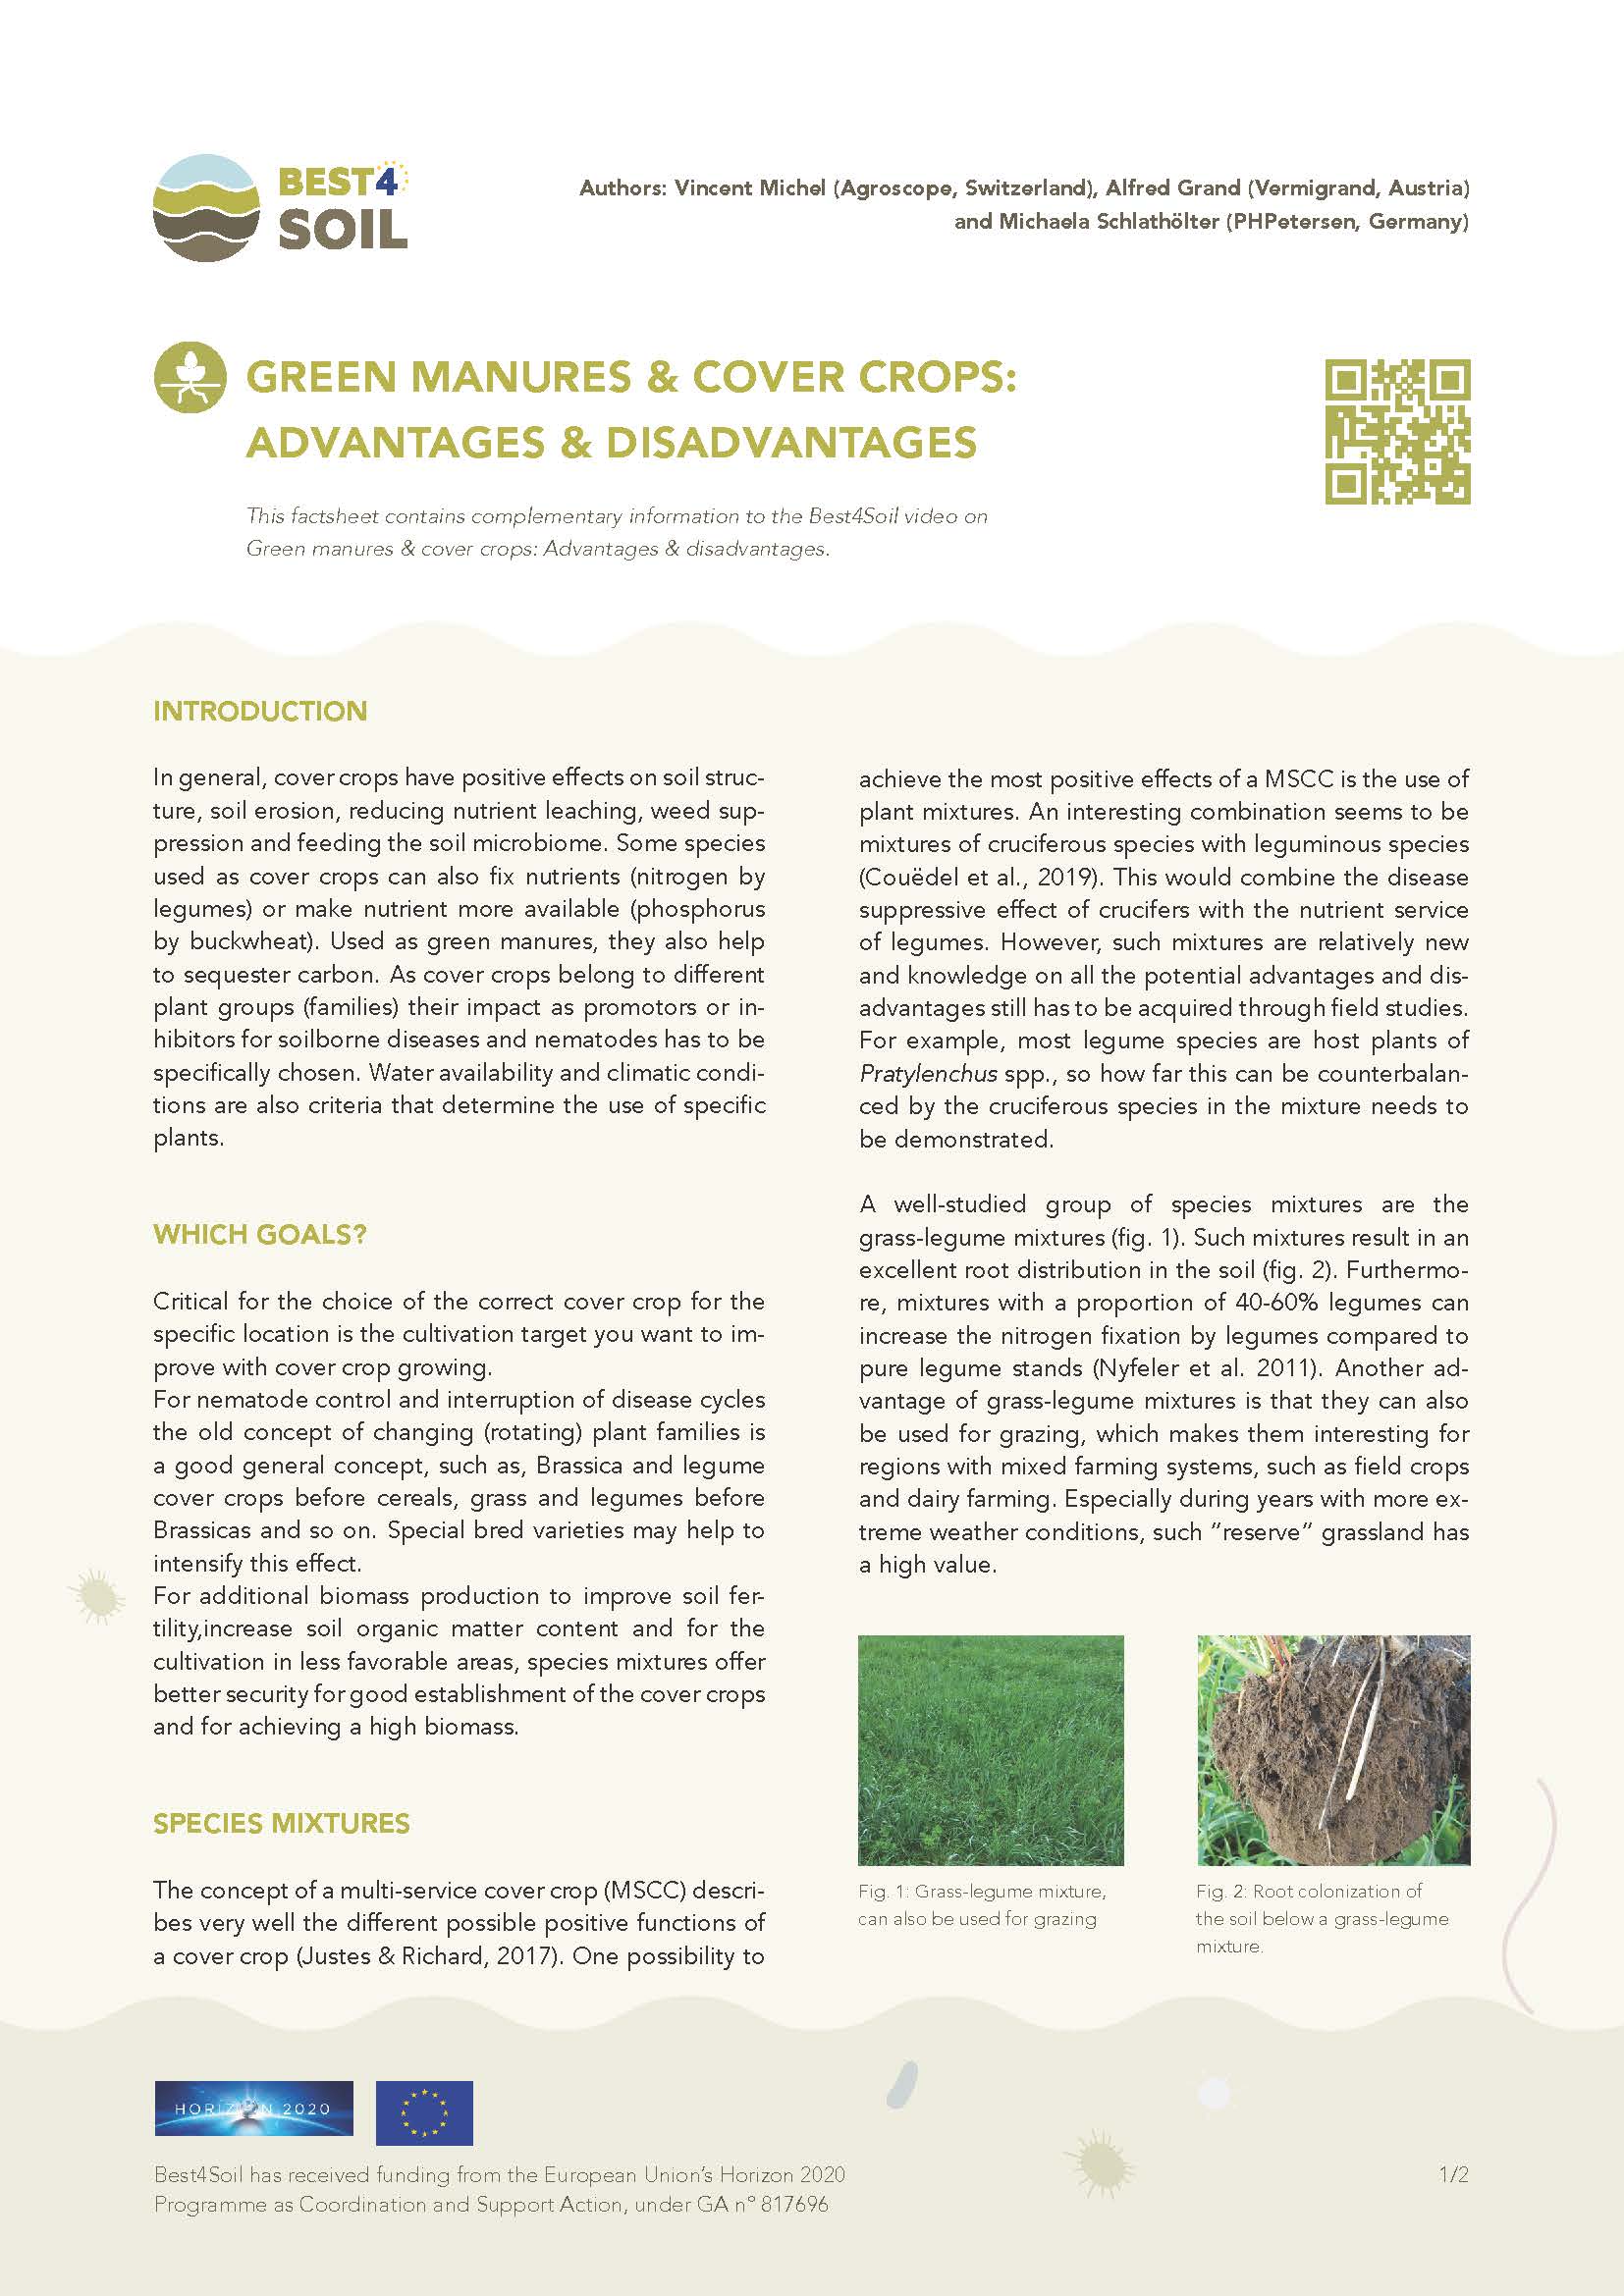 Concimi verdi e colture di copertura: vantaggi e svantaggi (scheda informativa Best4Soil)